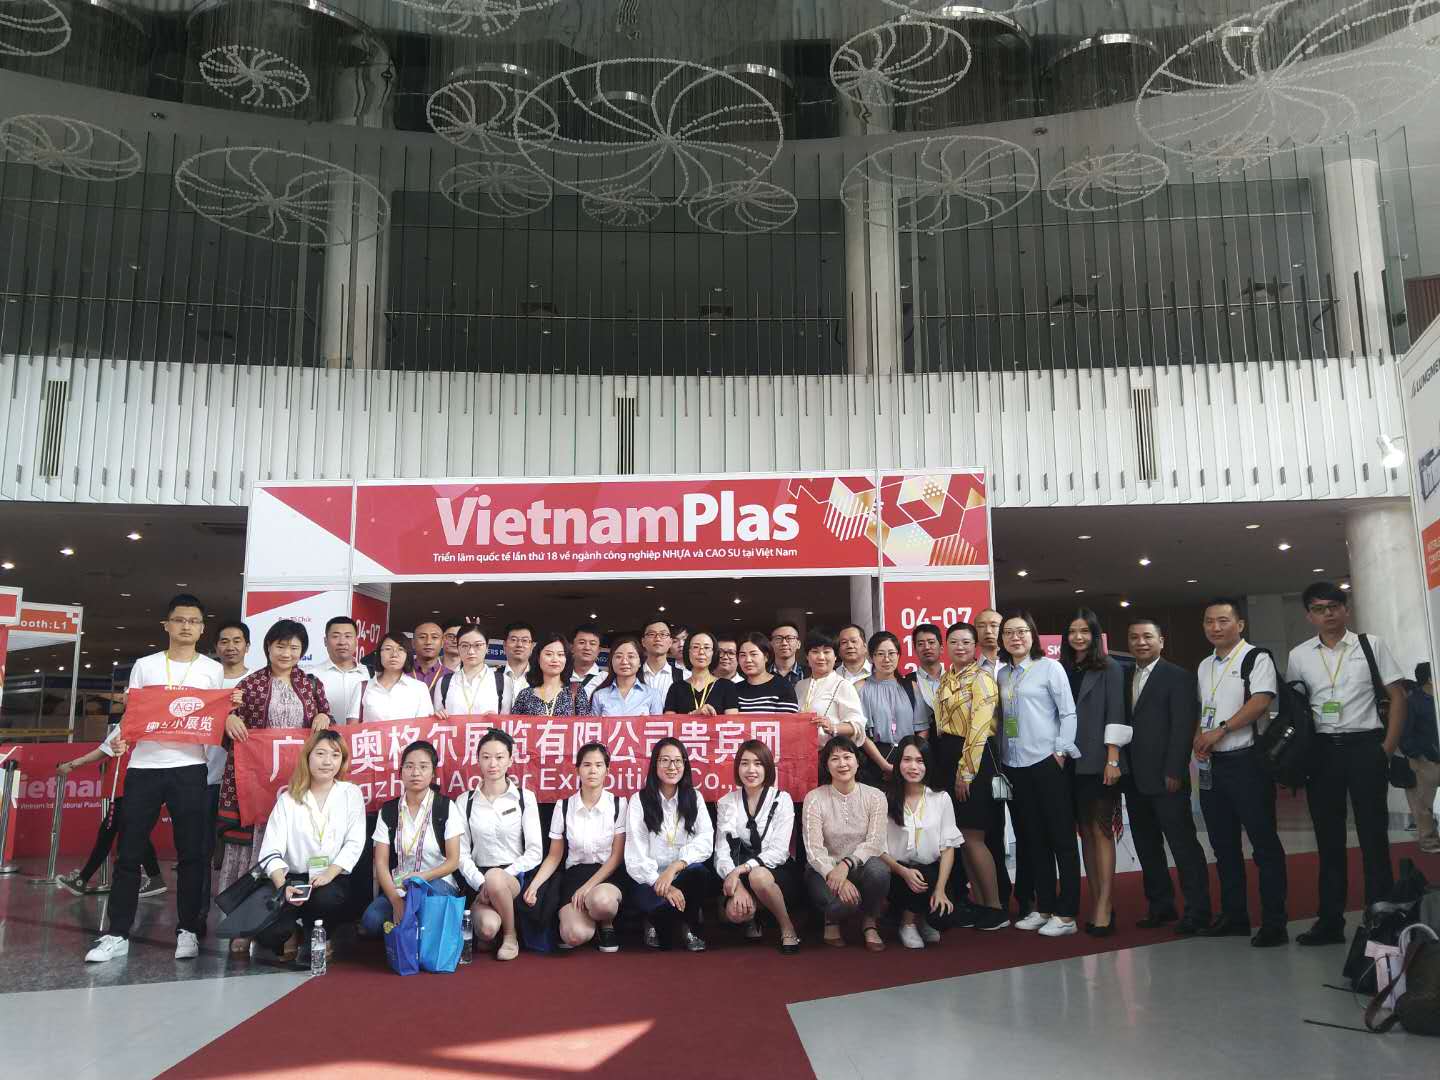 2019年越南胡志明橡塑展V-Plas